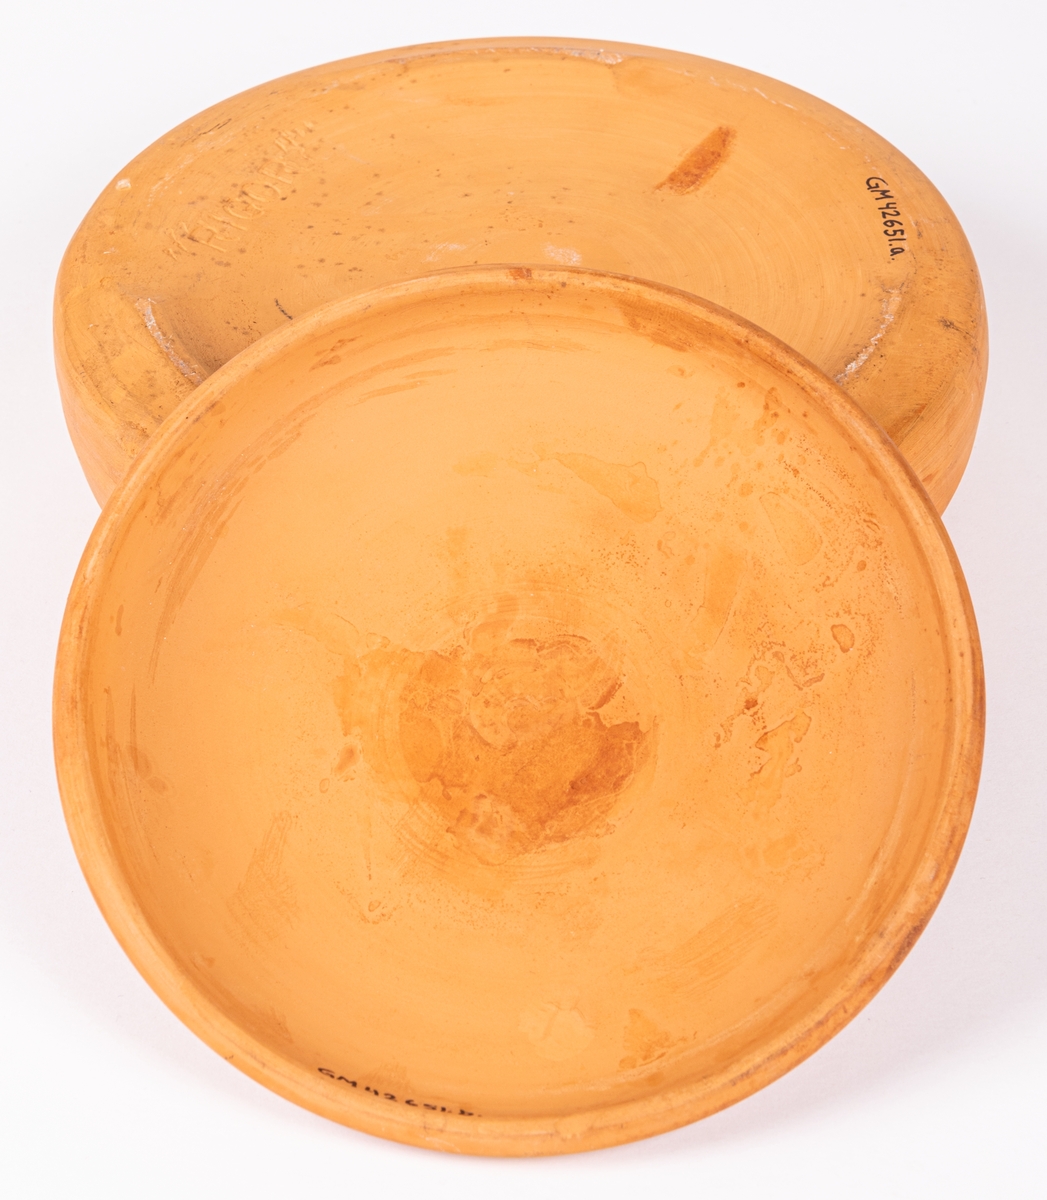 Smörkylare av oglaserad keramik, rund med lock. Kylaren saknar invändig skål för smöret, ofta i porslin eller glas. Smöret skulle ligga i porslinsskålen och runt den hälldes kallt vatten eller krossad is. Rigor är modellnamnet på kylaren.